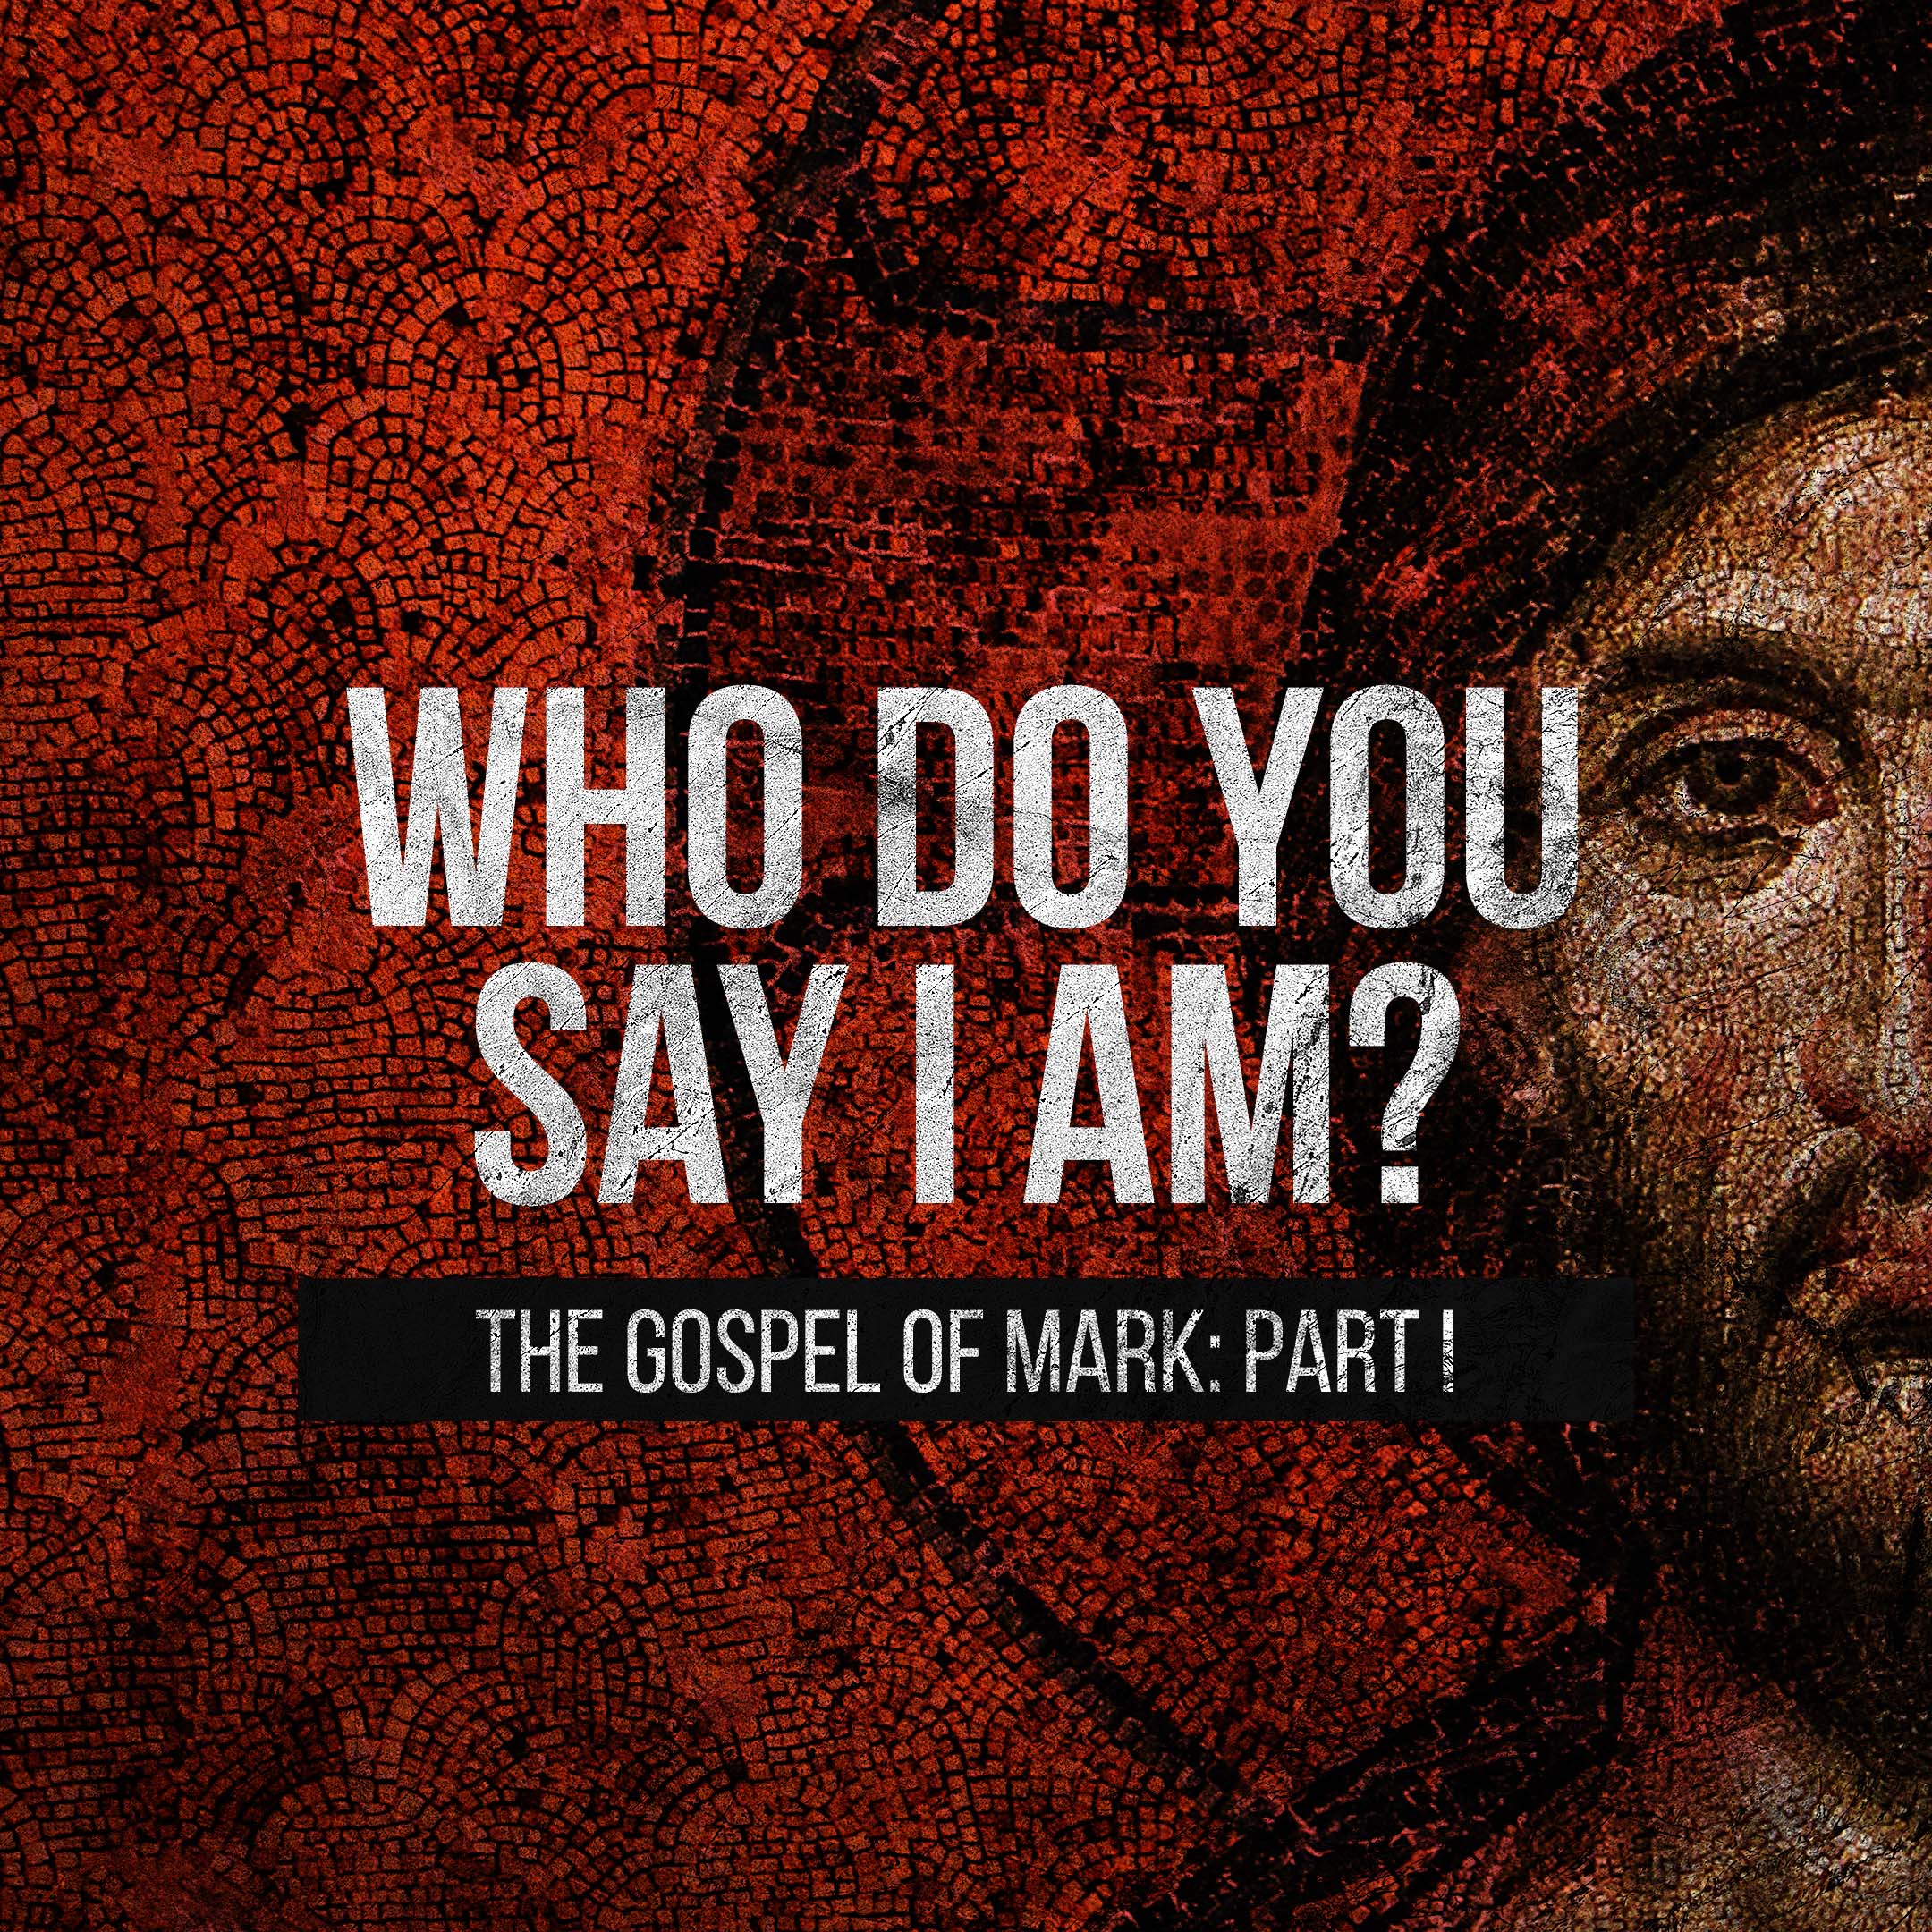 The Book of Mark - Prepare the Way - Mark 1:1-11